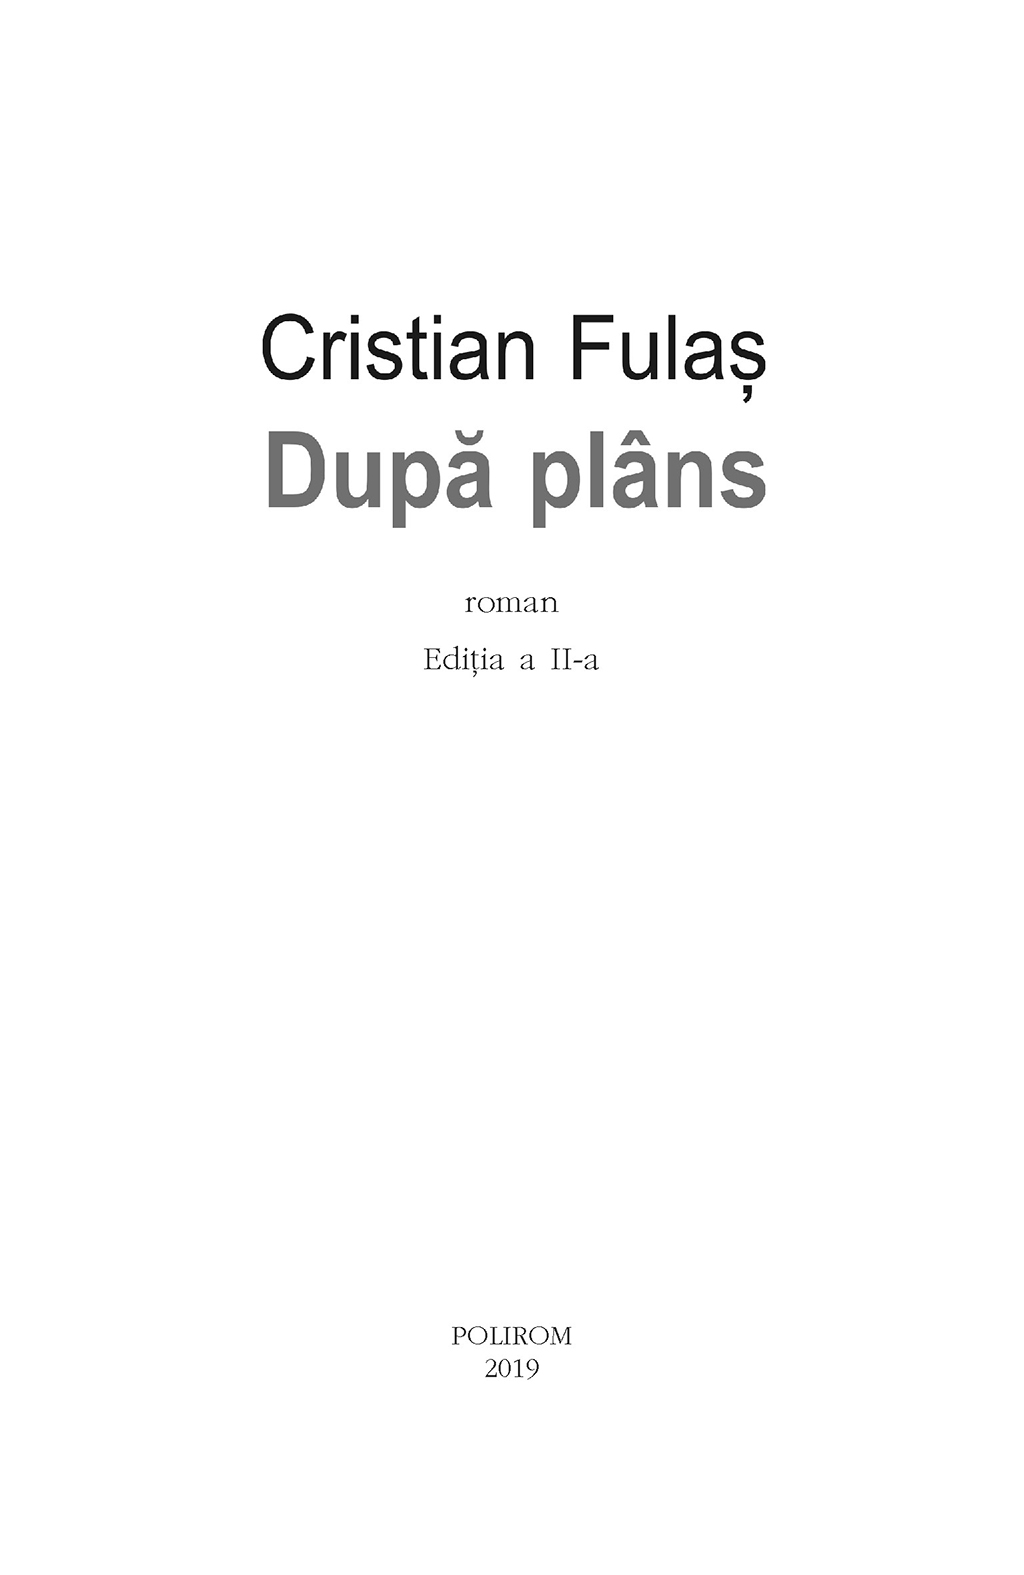 Dupa plans | Cristian Fulas - 5